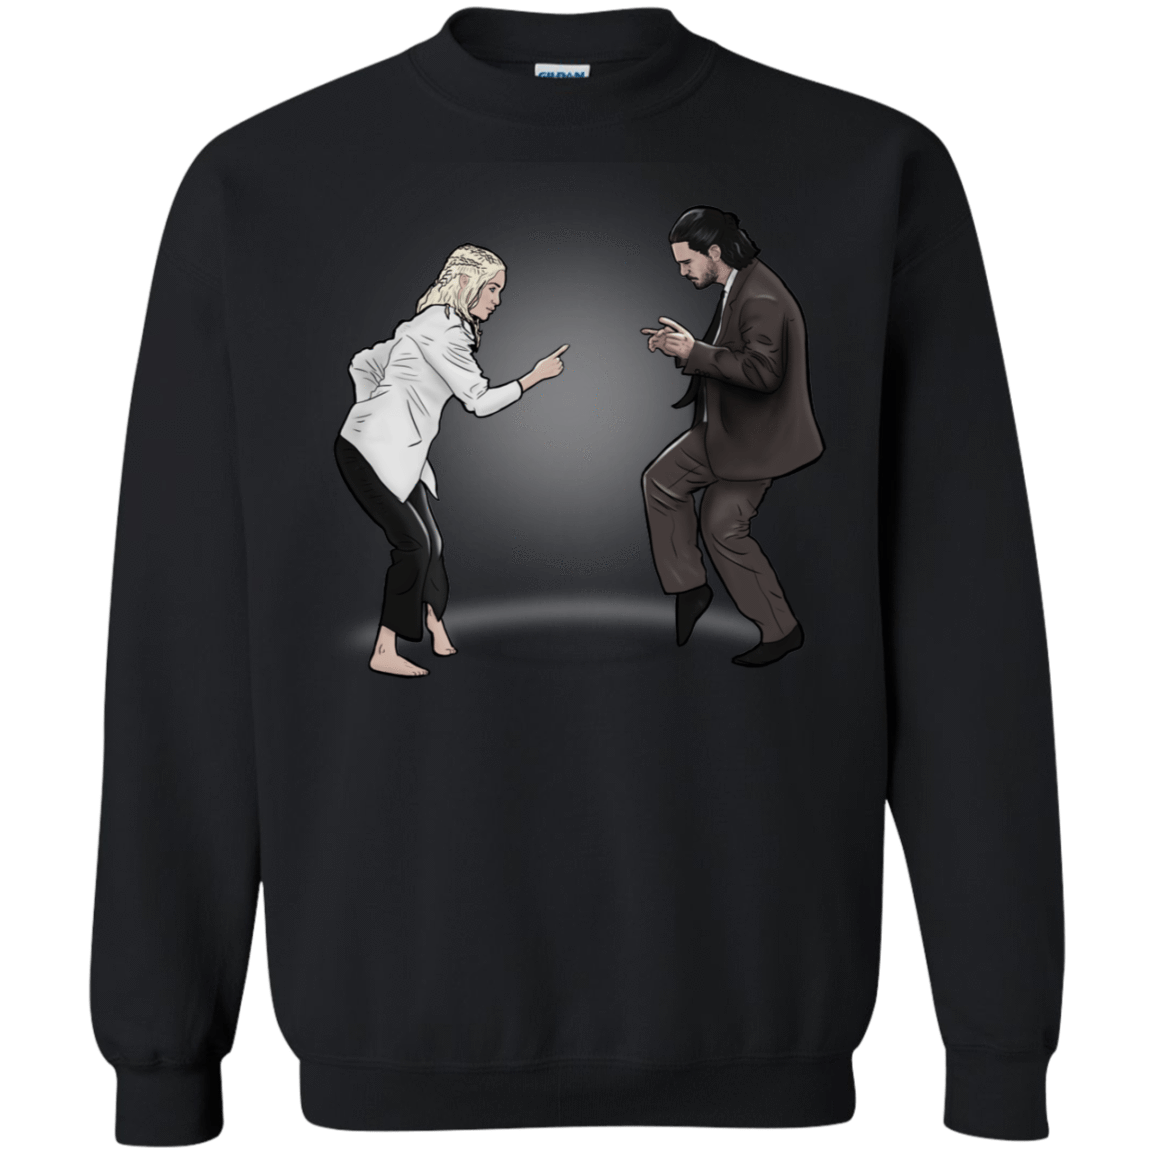 Sweatshirts Black / S The Ballad of Jon and Dany Crewneck Sweatshirt